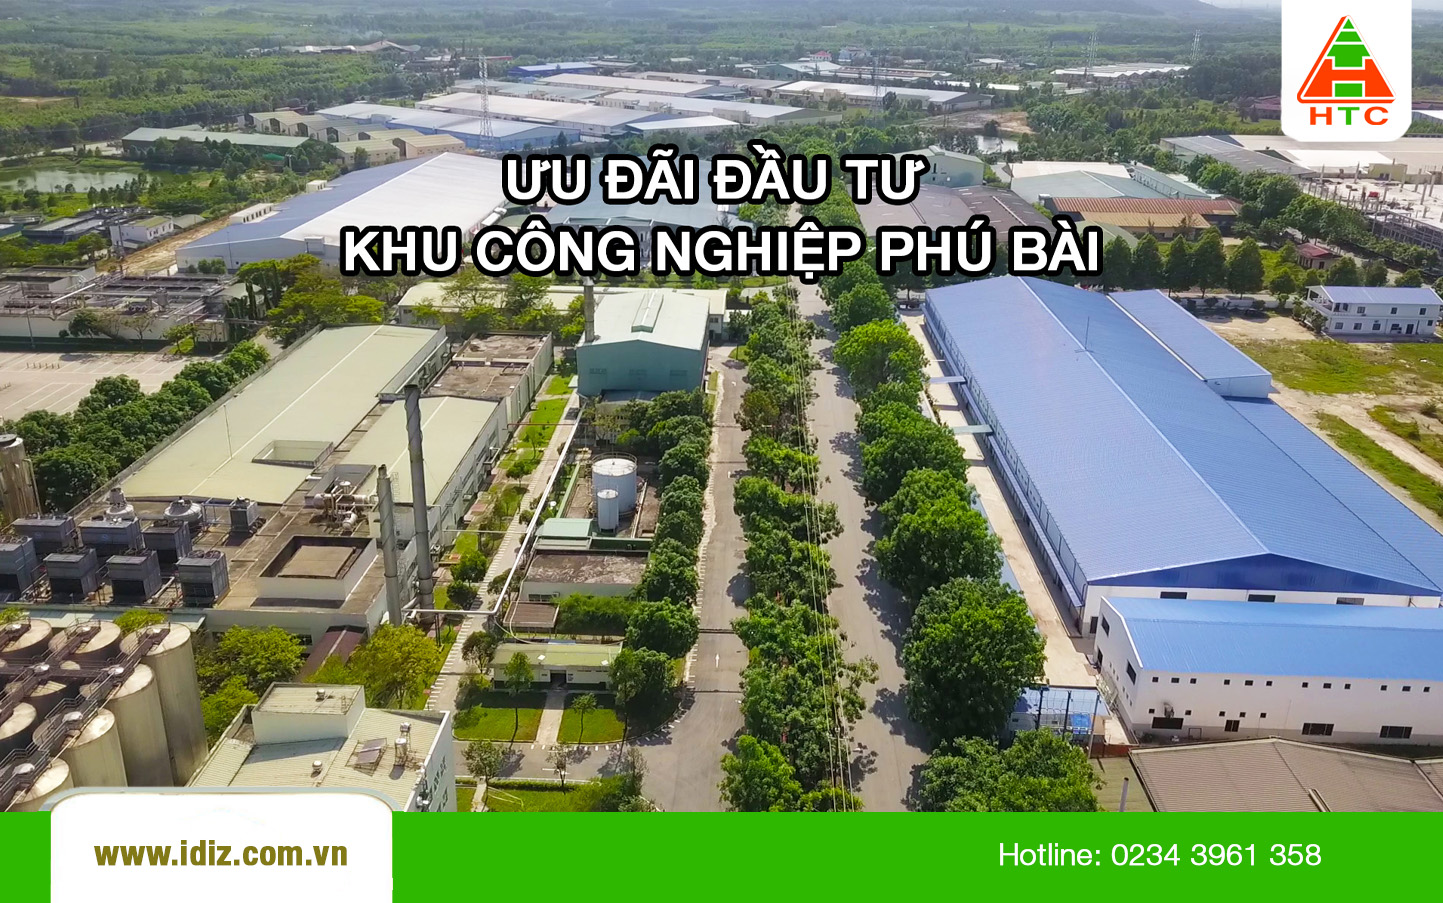 [Chuyên mục] Thông tin ưu đãi đầu tư Khu công nghiệp Phú Bài